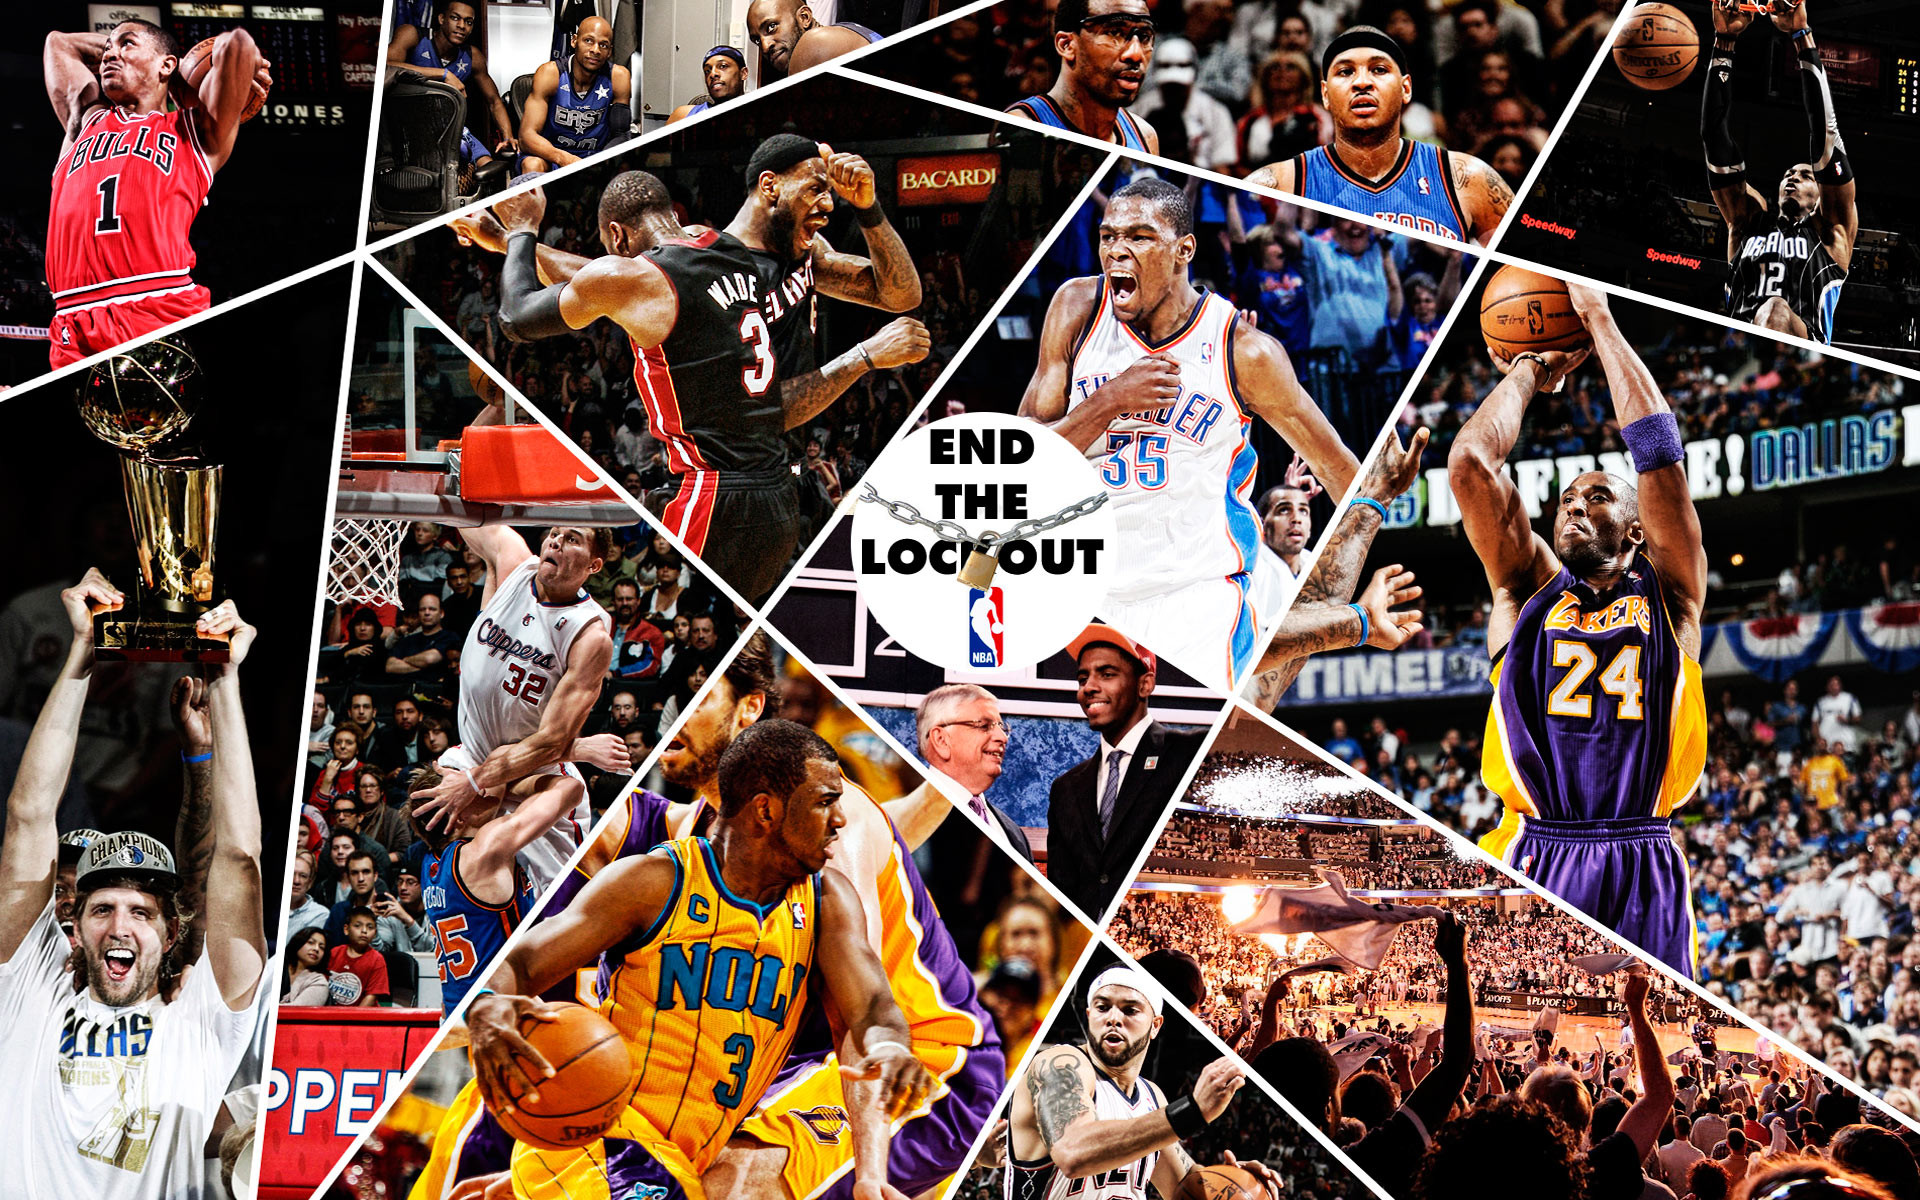 Basketball Legends Wallpapers